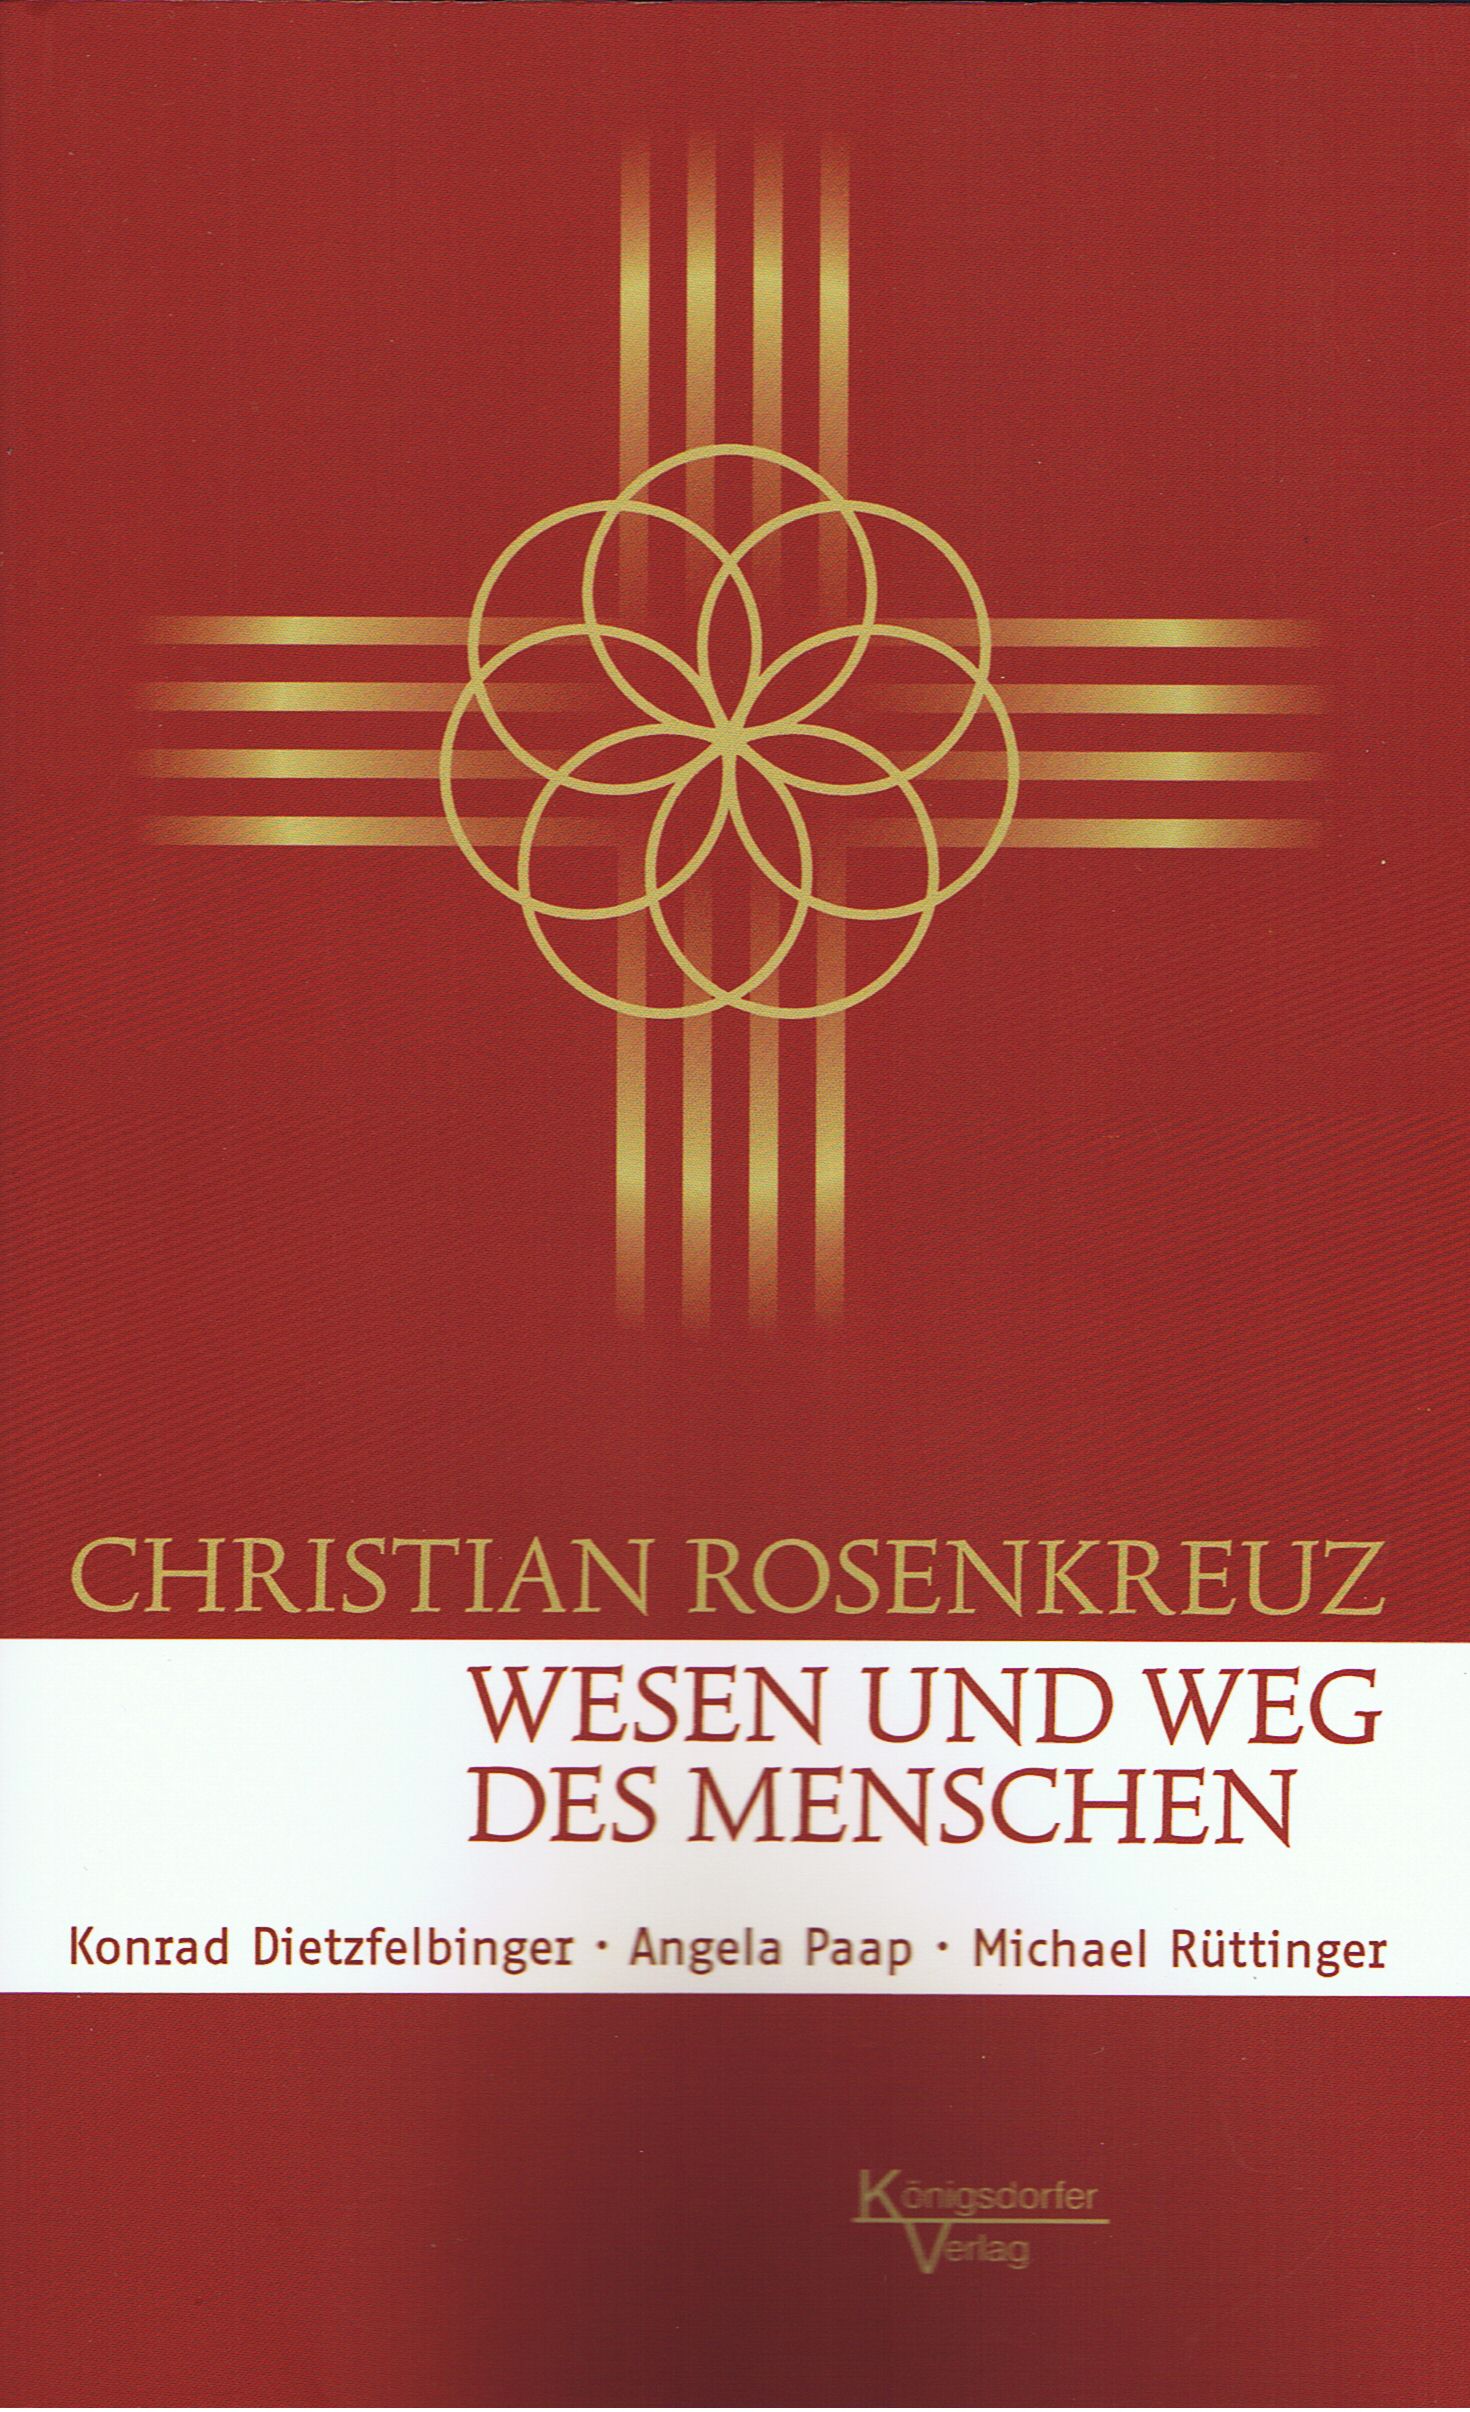  Christian Rosenkreuz